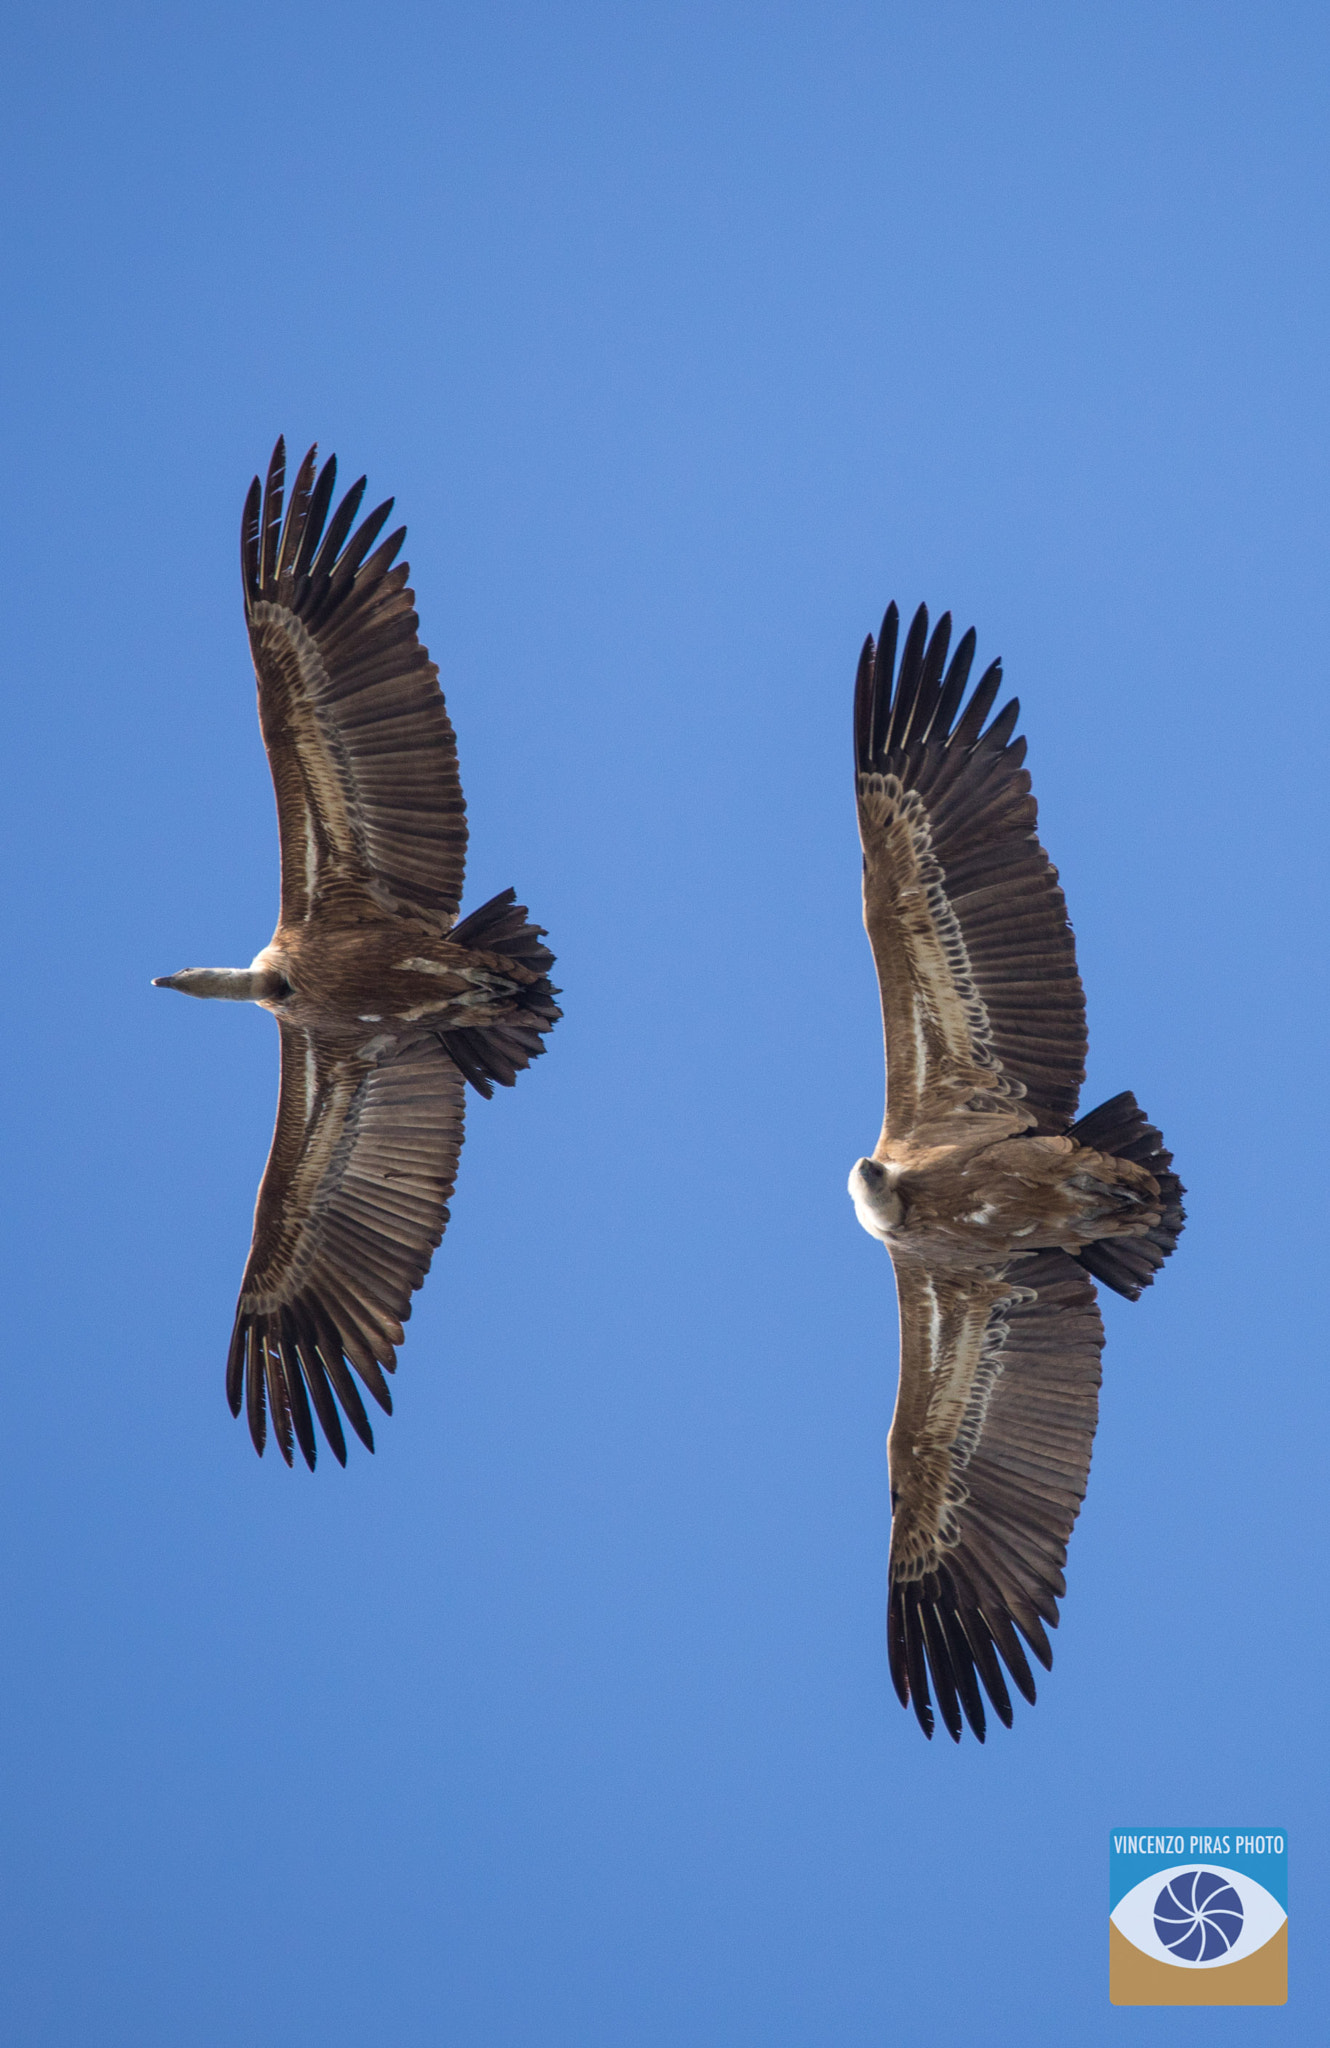 Canon EOS 5D Mark IV sample photo. Avvoltoio grifone in volo sulla costa di bosa - sardegna centro occidentale photography